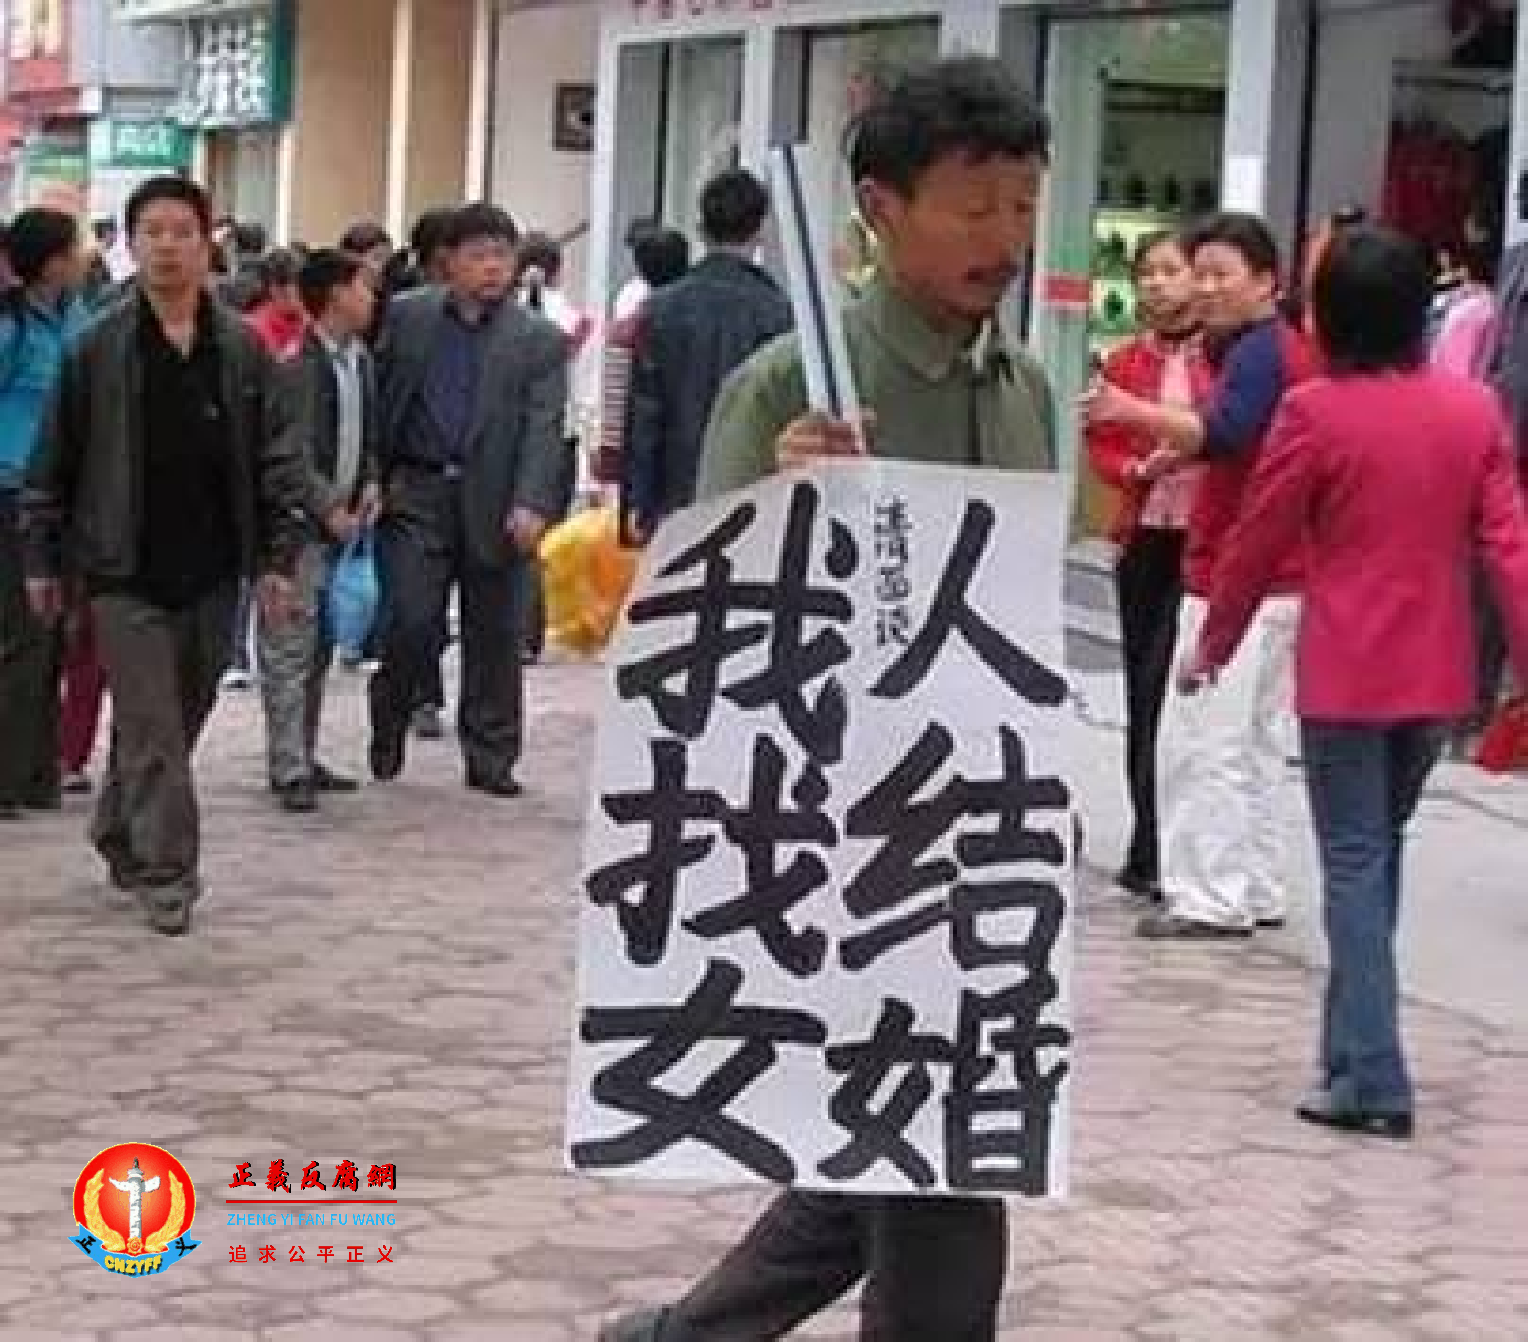 一名男人在大街上举着牌子“我找女人结婚”.png